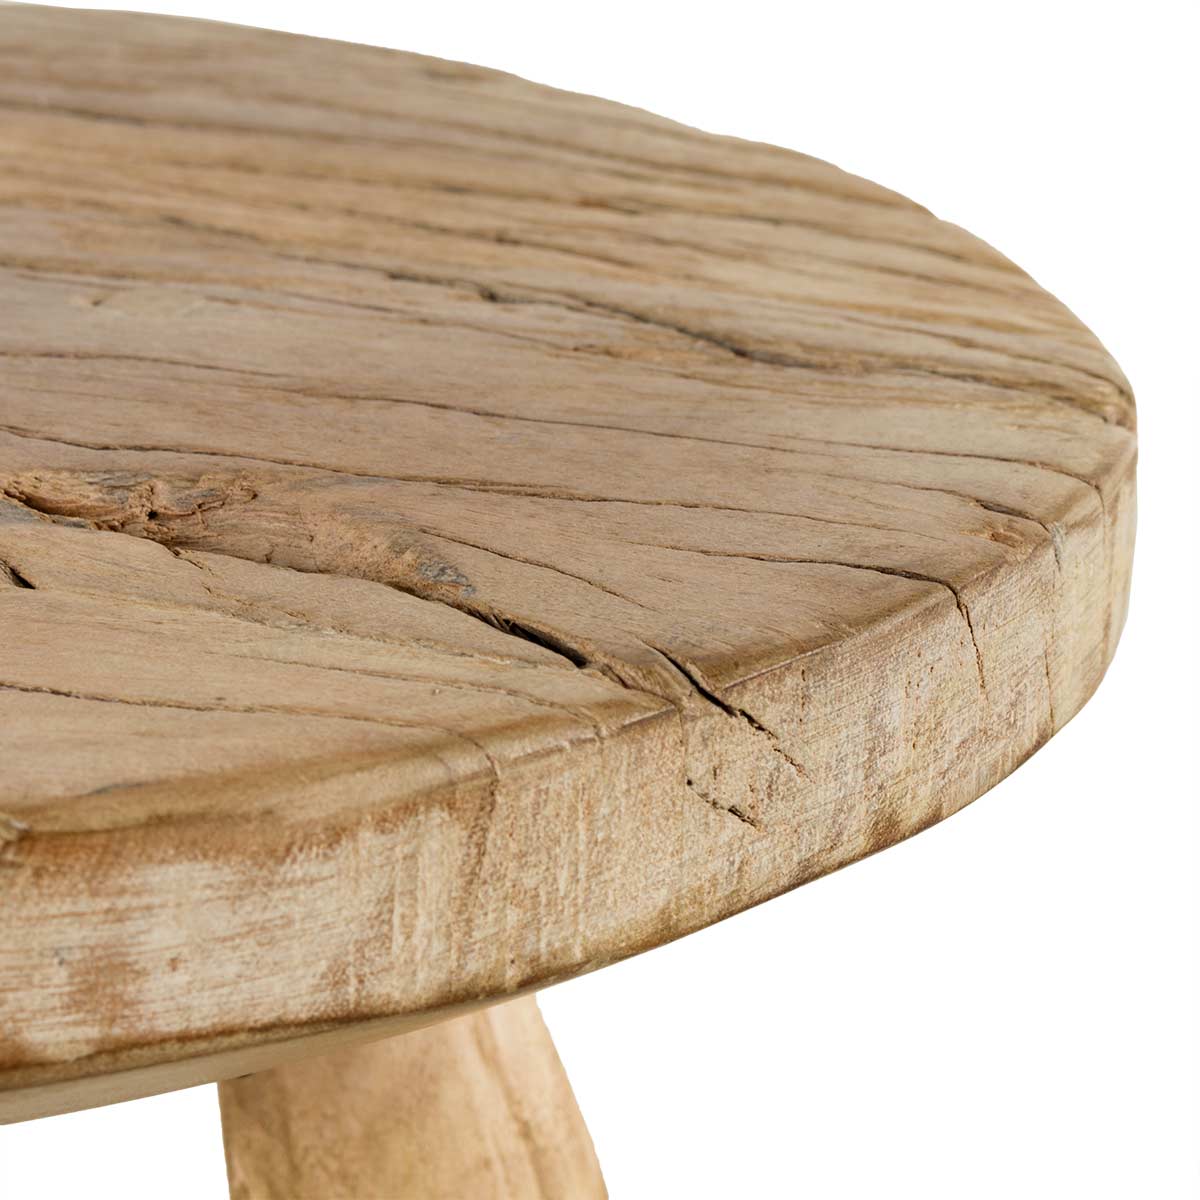 Taburetes bajos fabricados en madera de haya – Mueblear